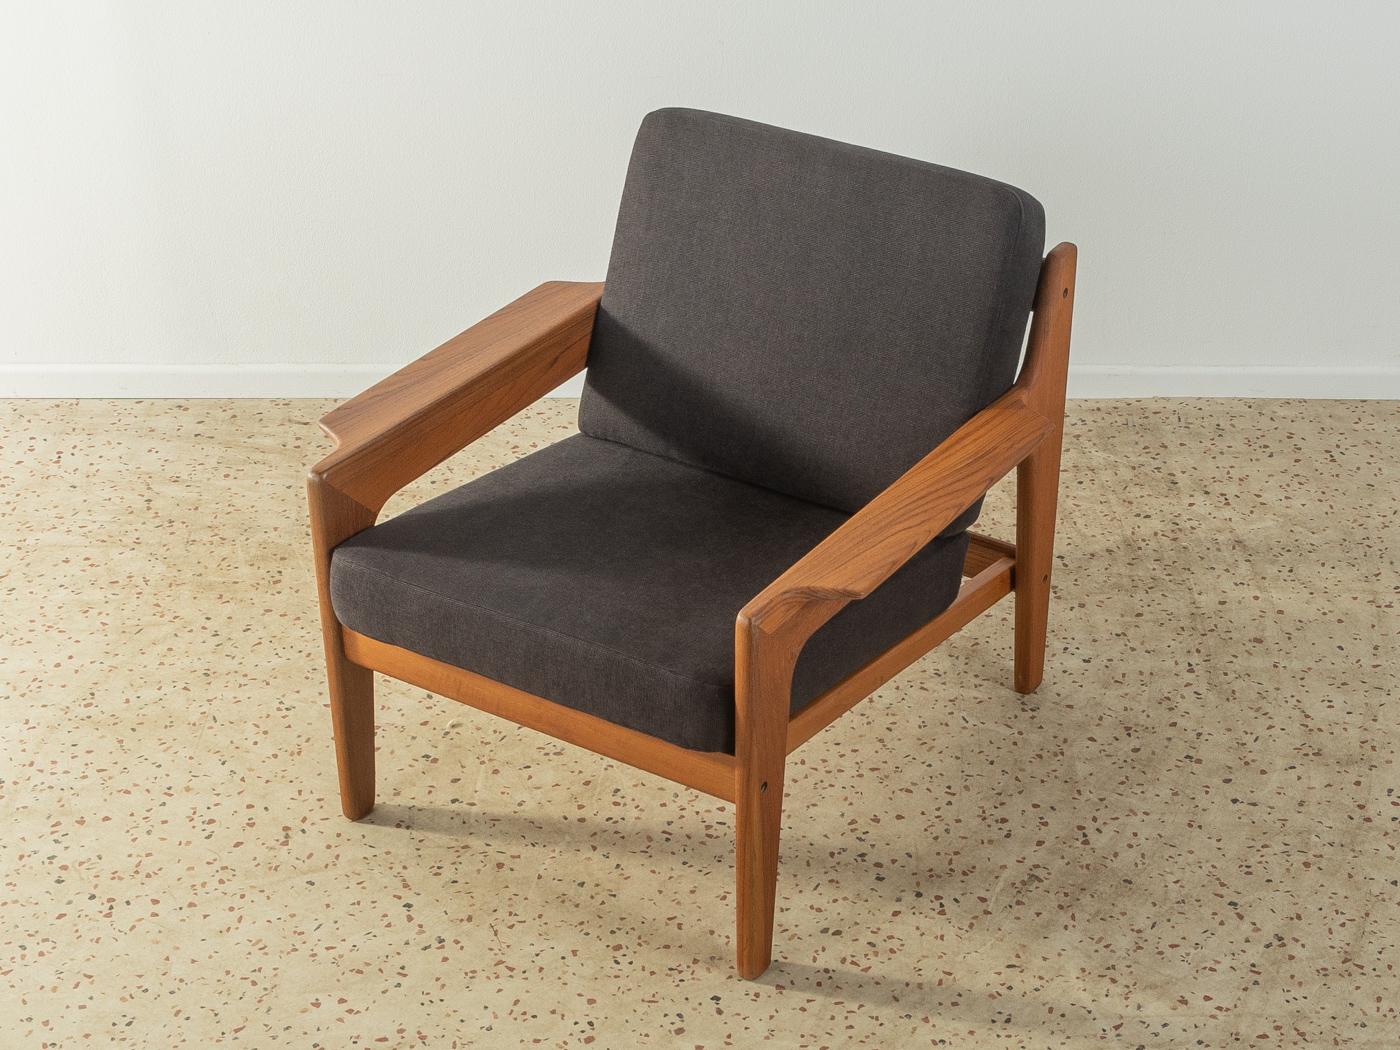 Klassischer Sessel aus Teakholz aus den 1960er Jahren von Arne Wahl Iversen für Komfort. Der Sessel wurde neu gepolstert und mit einem hochwertigen Stoff in Schwarz bezogen.

Qualitätsmerkmale:
    vollendetes Design: perfekte Proportionen und